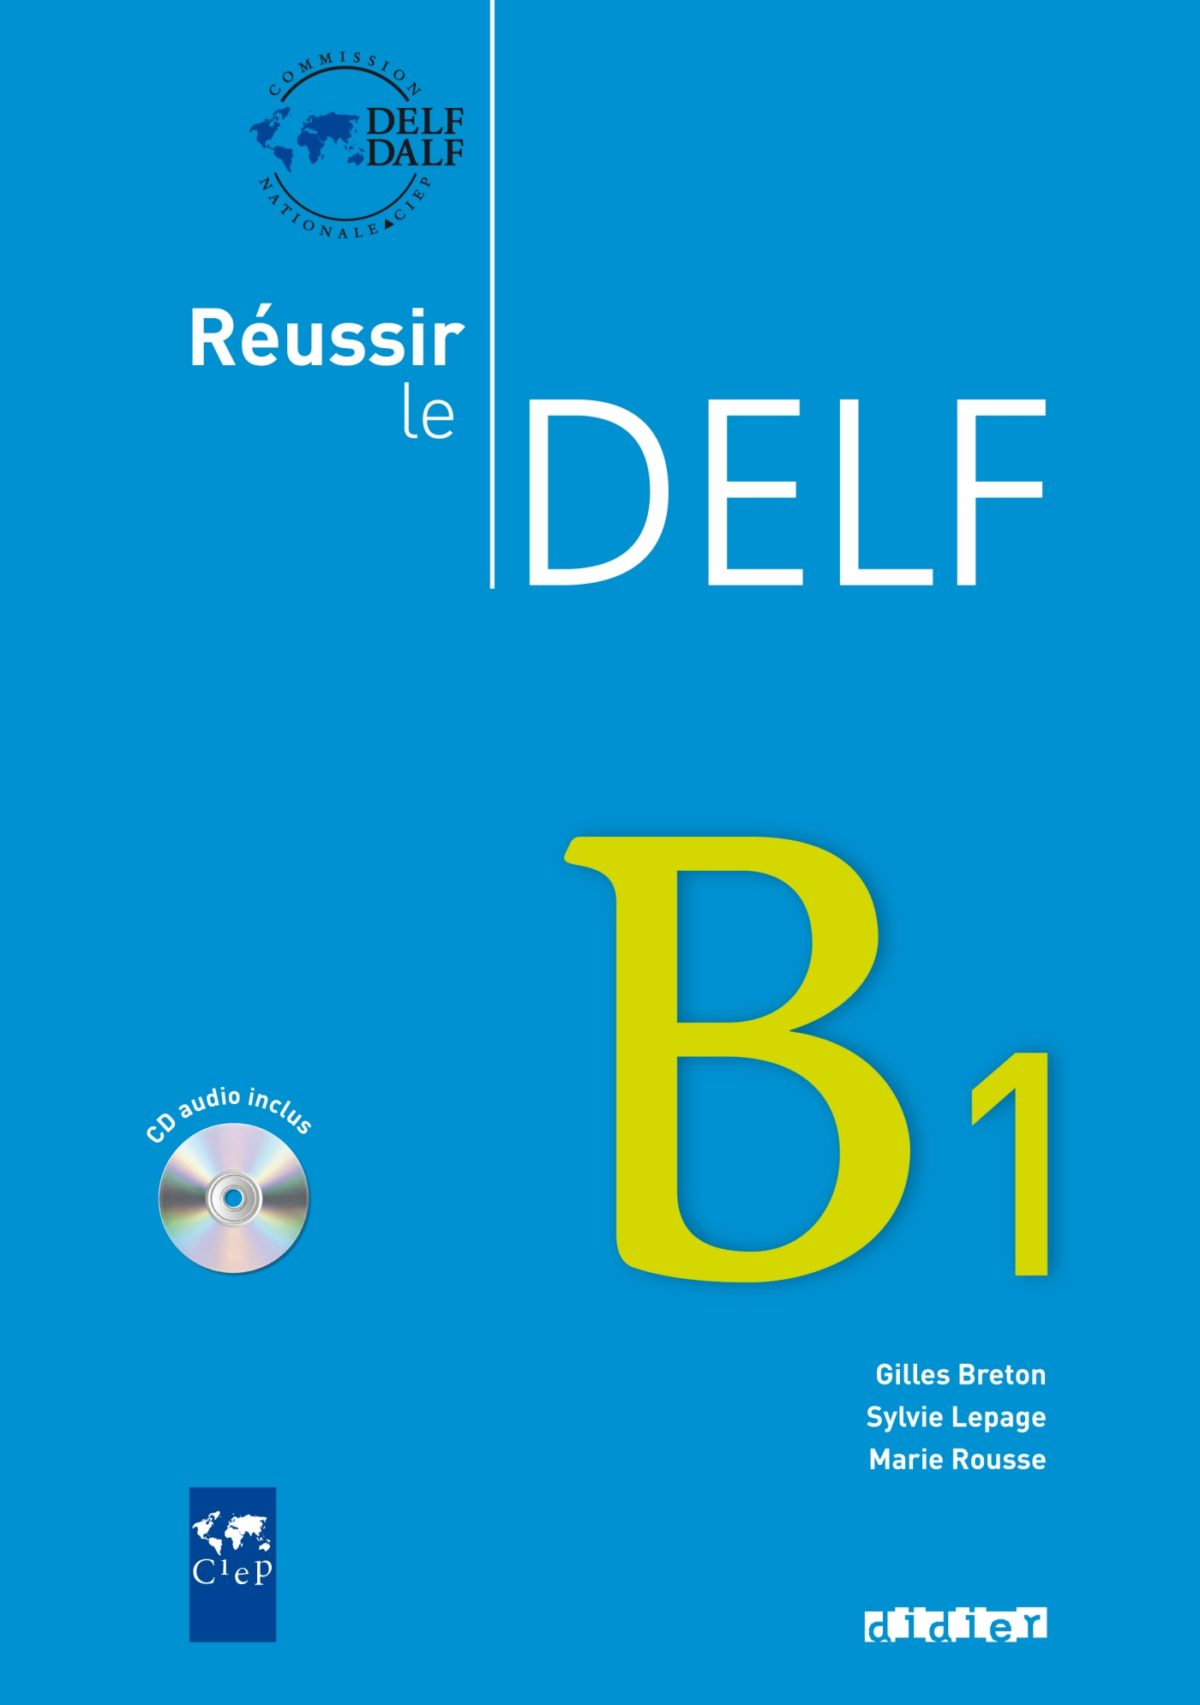 Reussir le Delf B1 – Livre + CD – Didier FLE